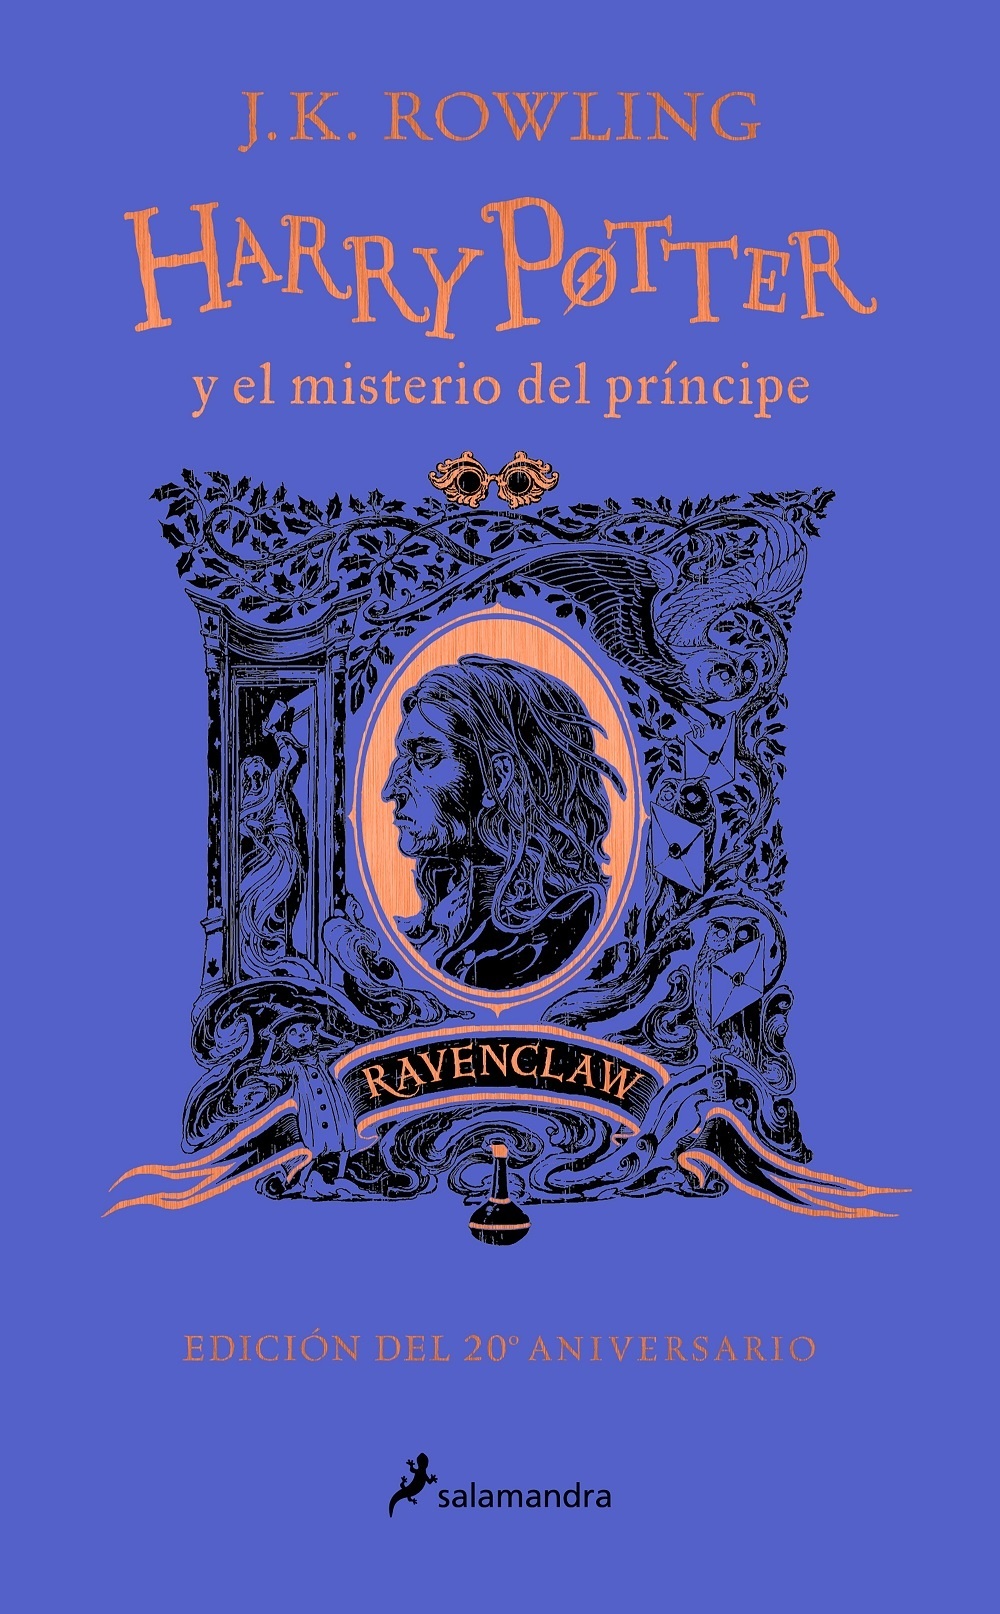 Harry Potter y el misterio del principe (20 aniversario Ravenclaw)